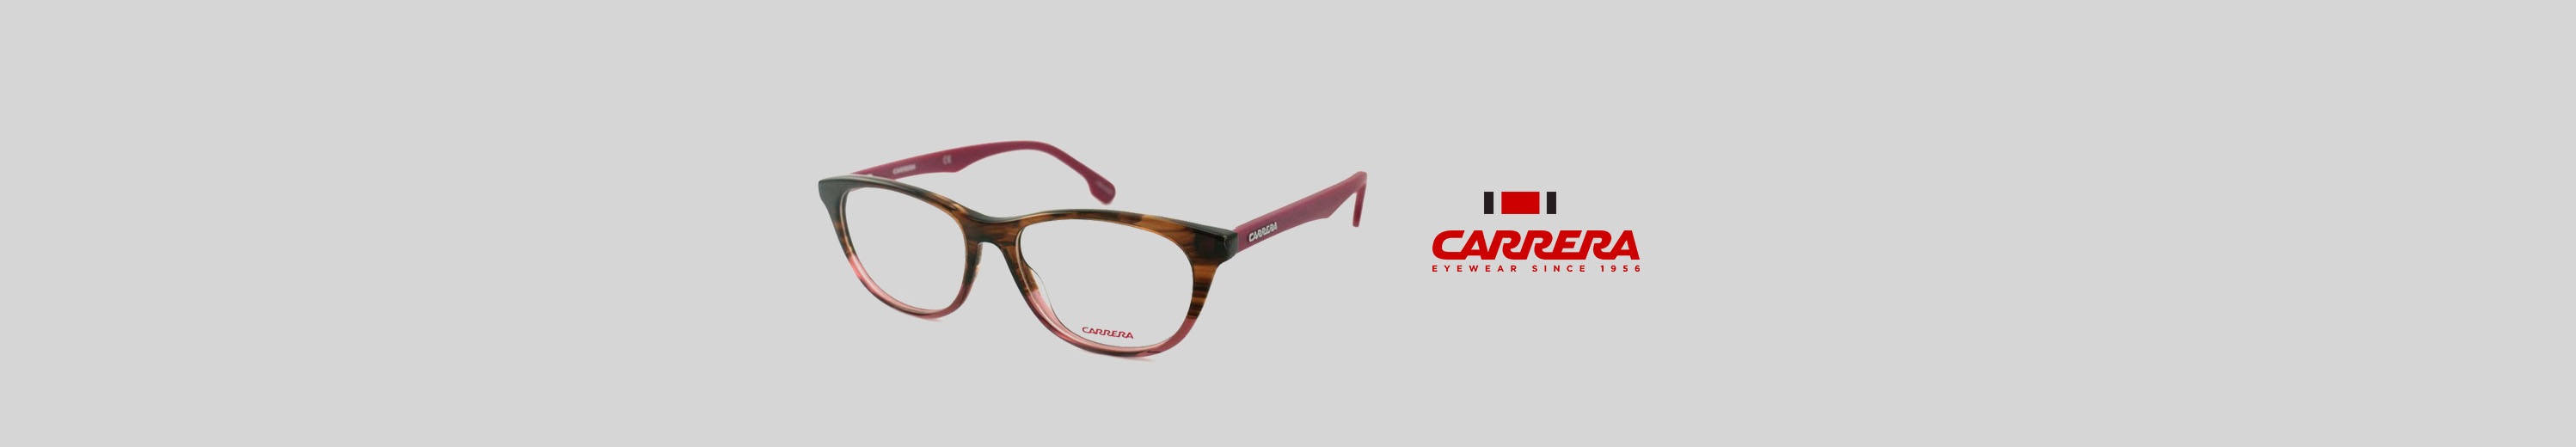 Carrera Butterfly Eyeglasses